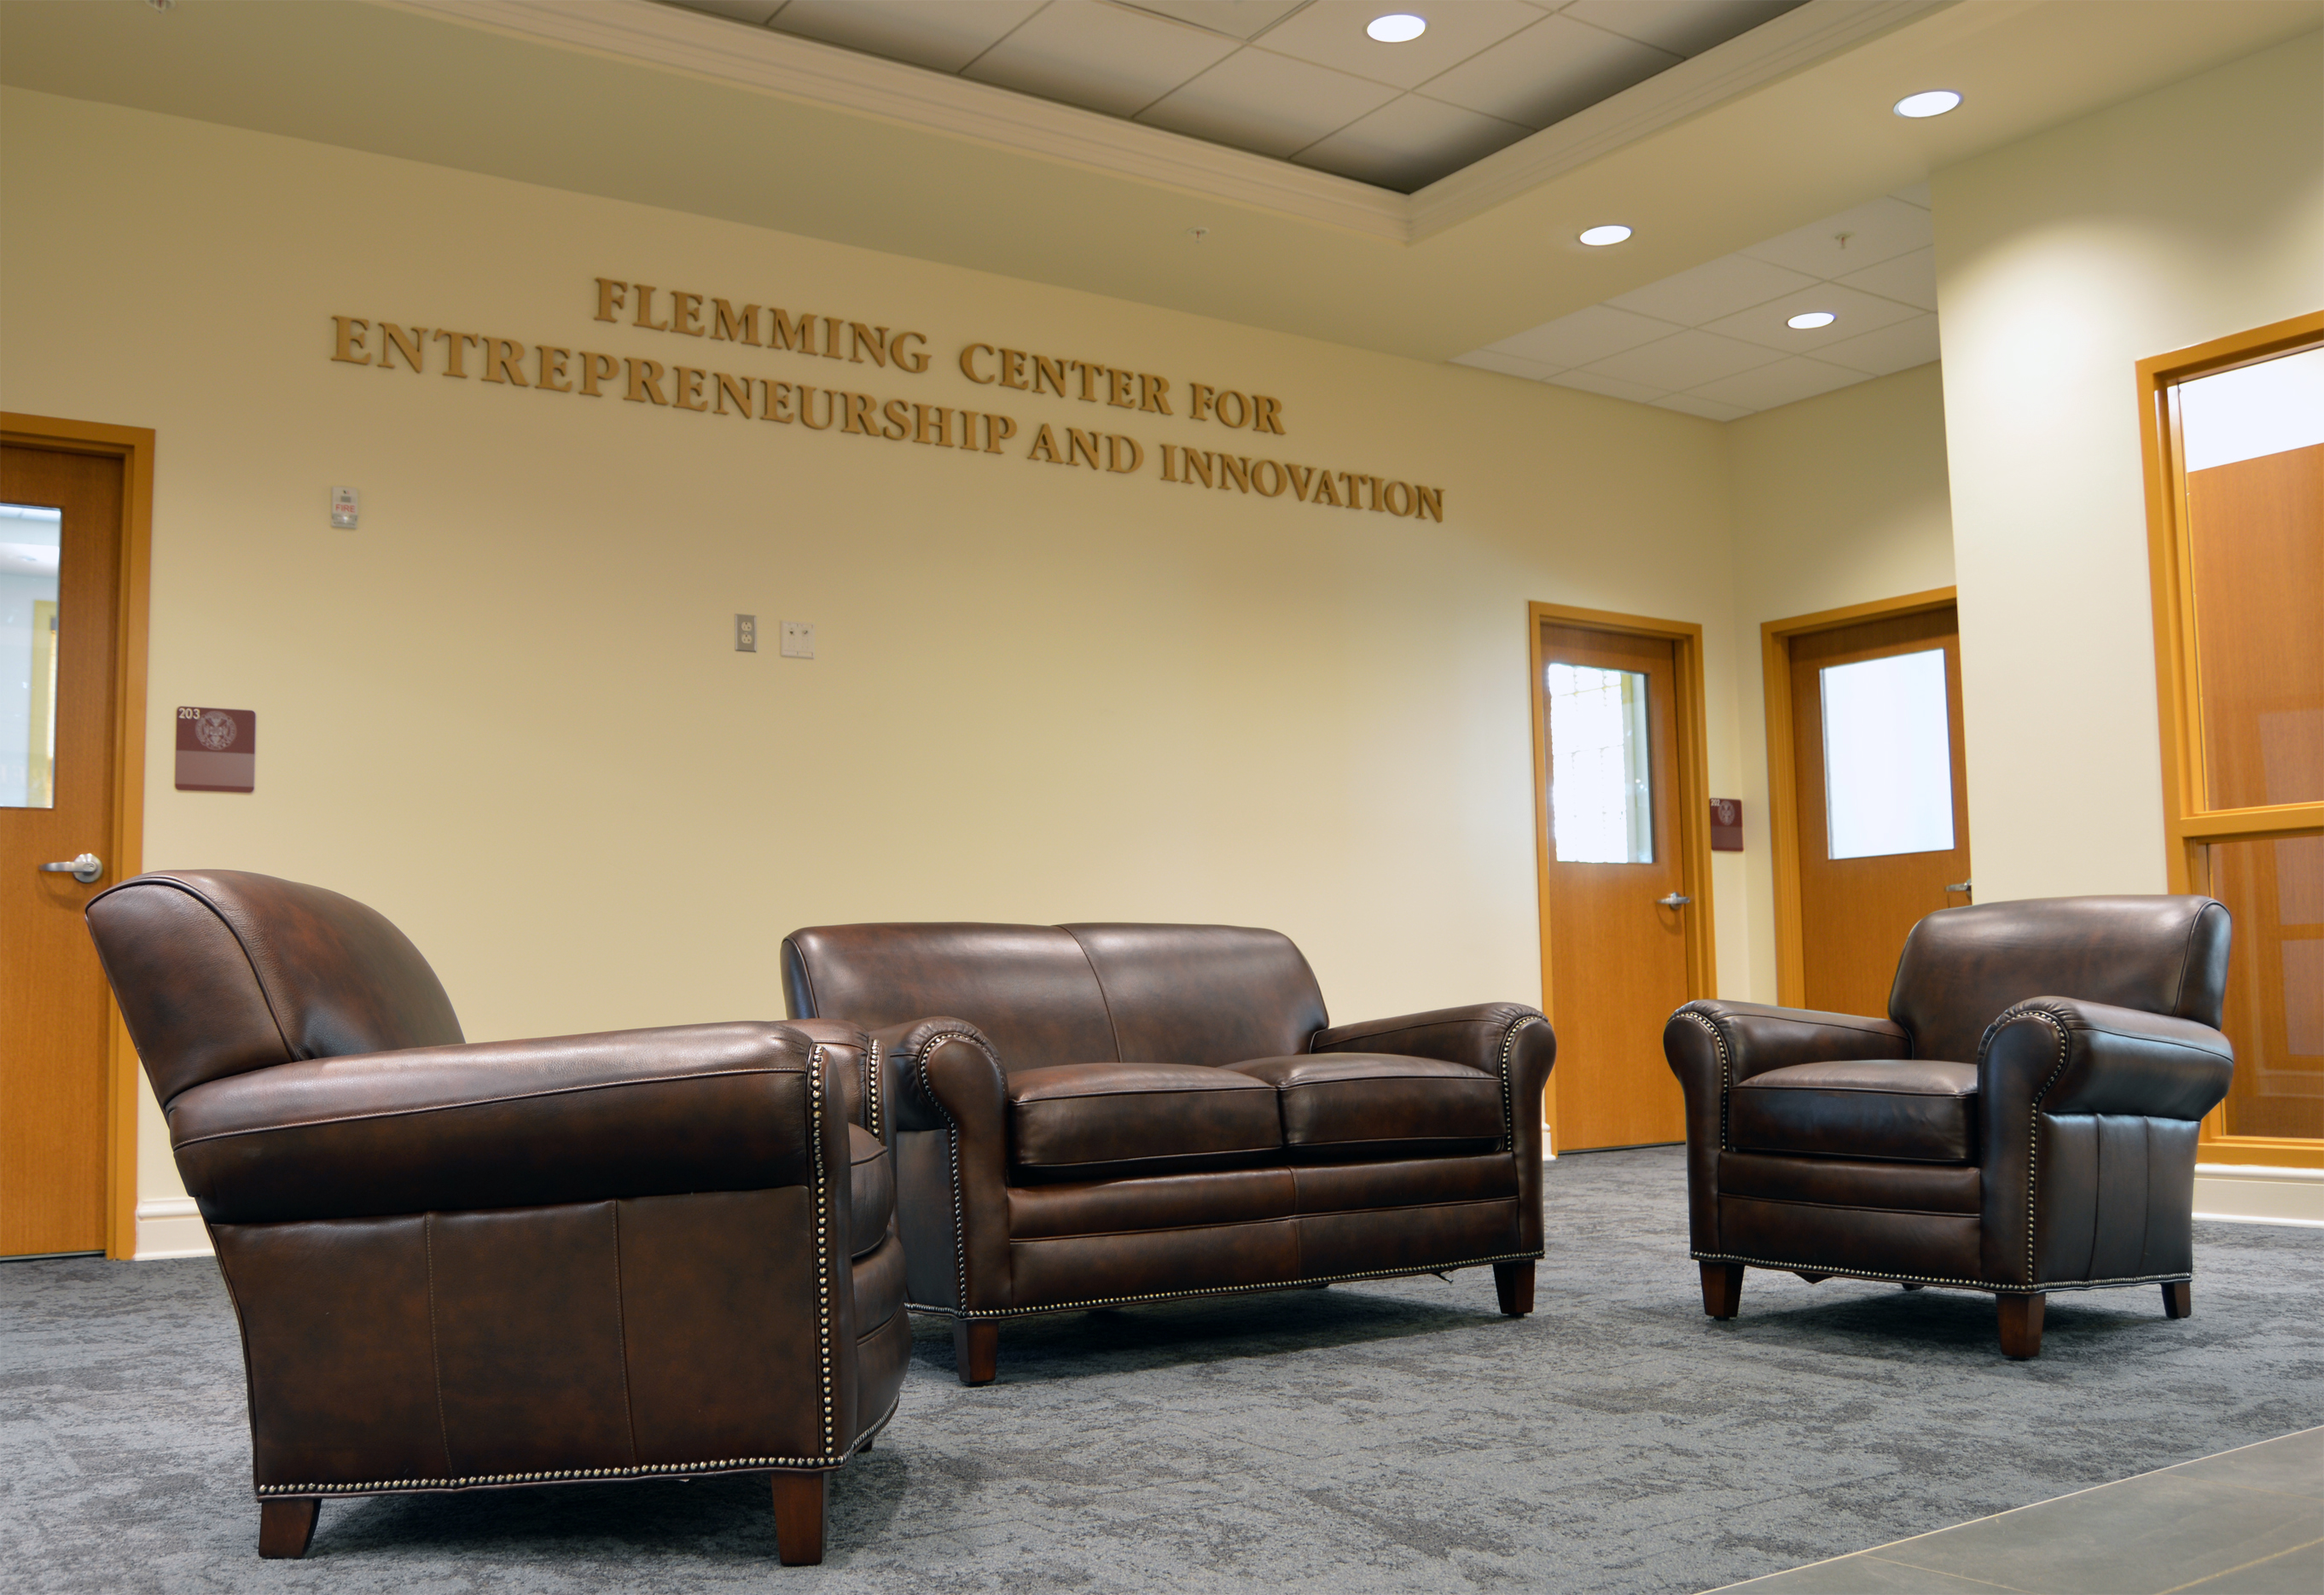 Flemming Center for Entrepreneurship and Innovation